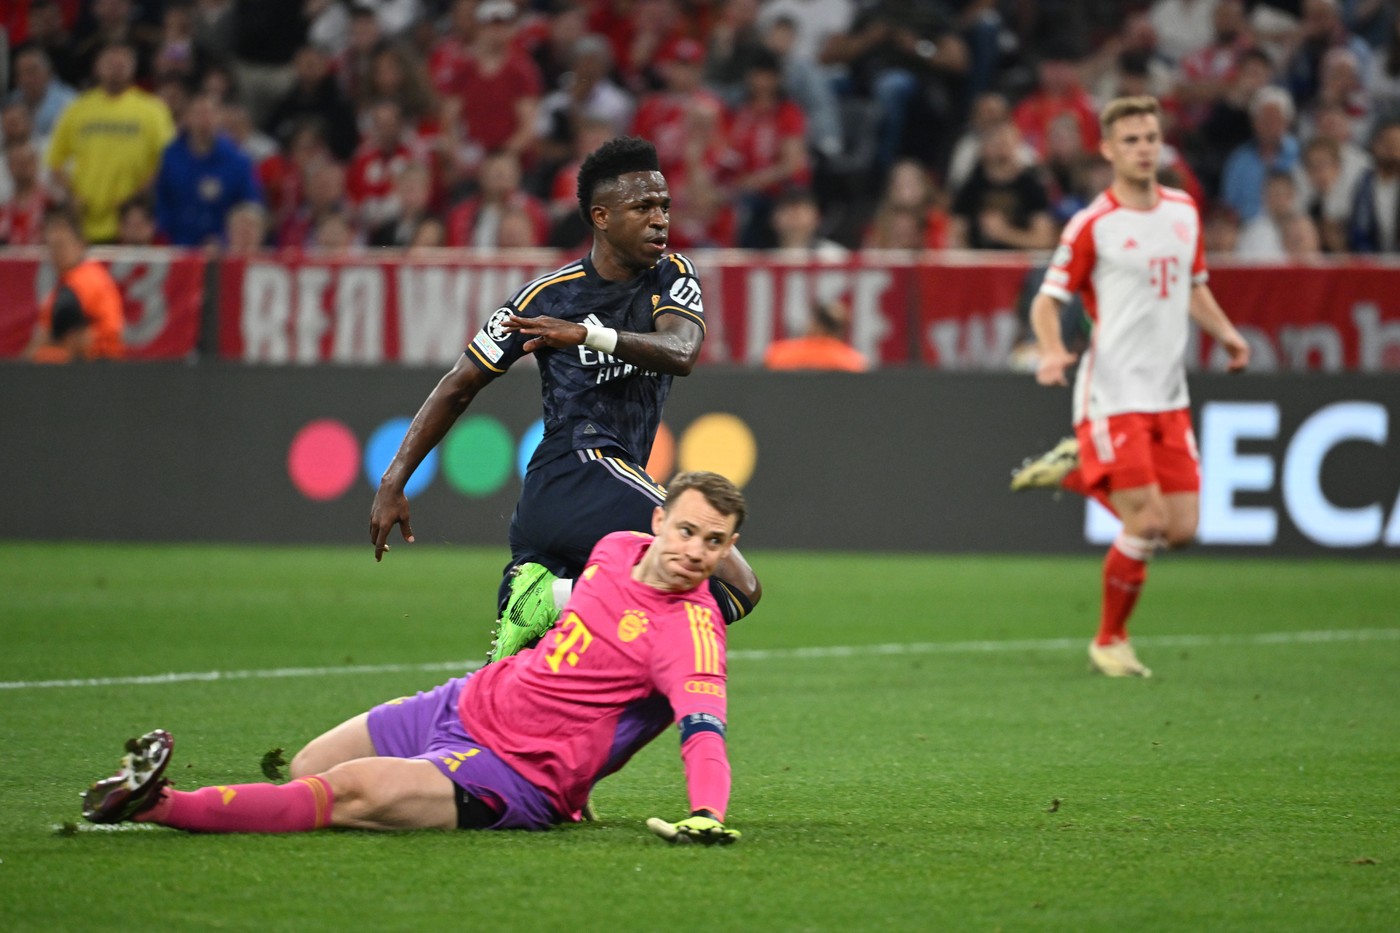 Unic! Ce performanță a atins Vinicius Jr odată cu golul marcat împotriva lui Bayern Munchen